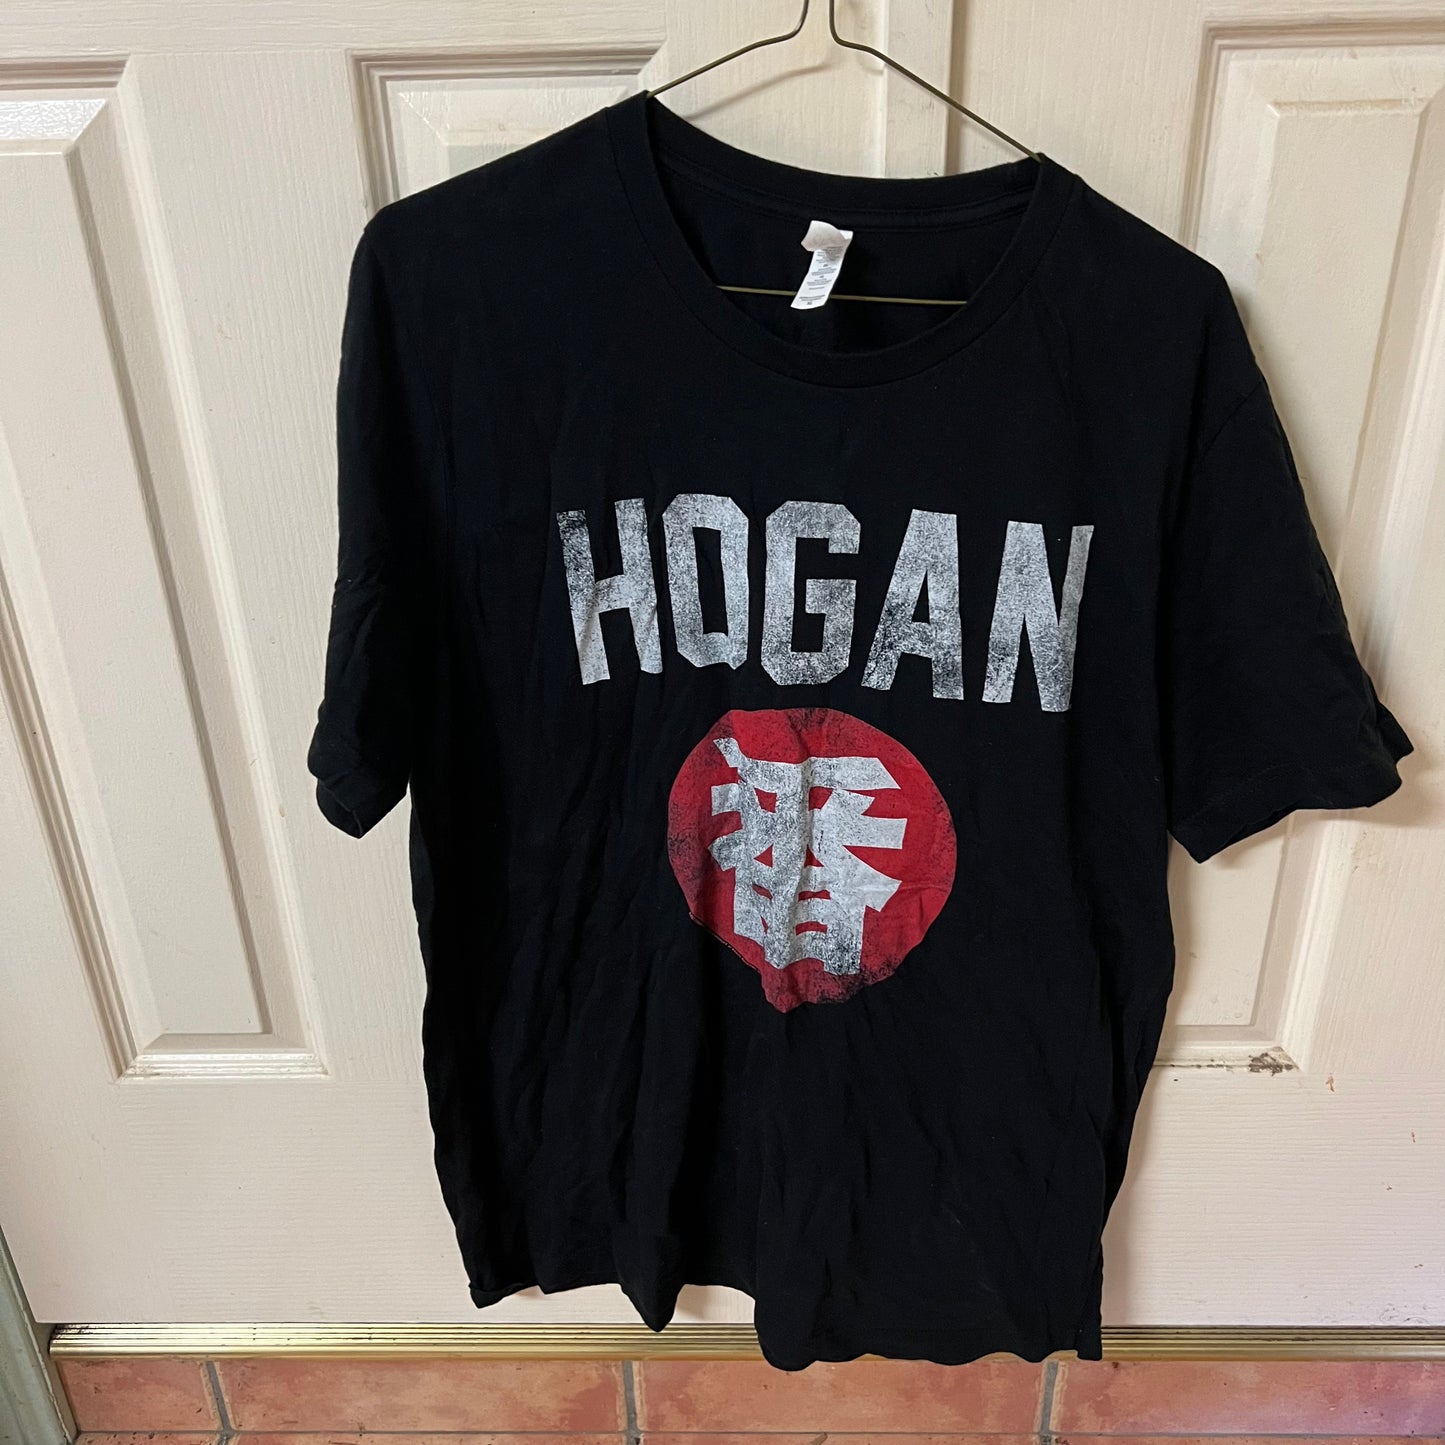 Hulk Hogan Japan - XL Size - Official WWE Shirt